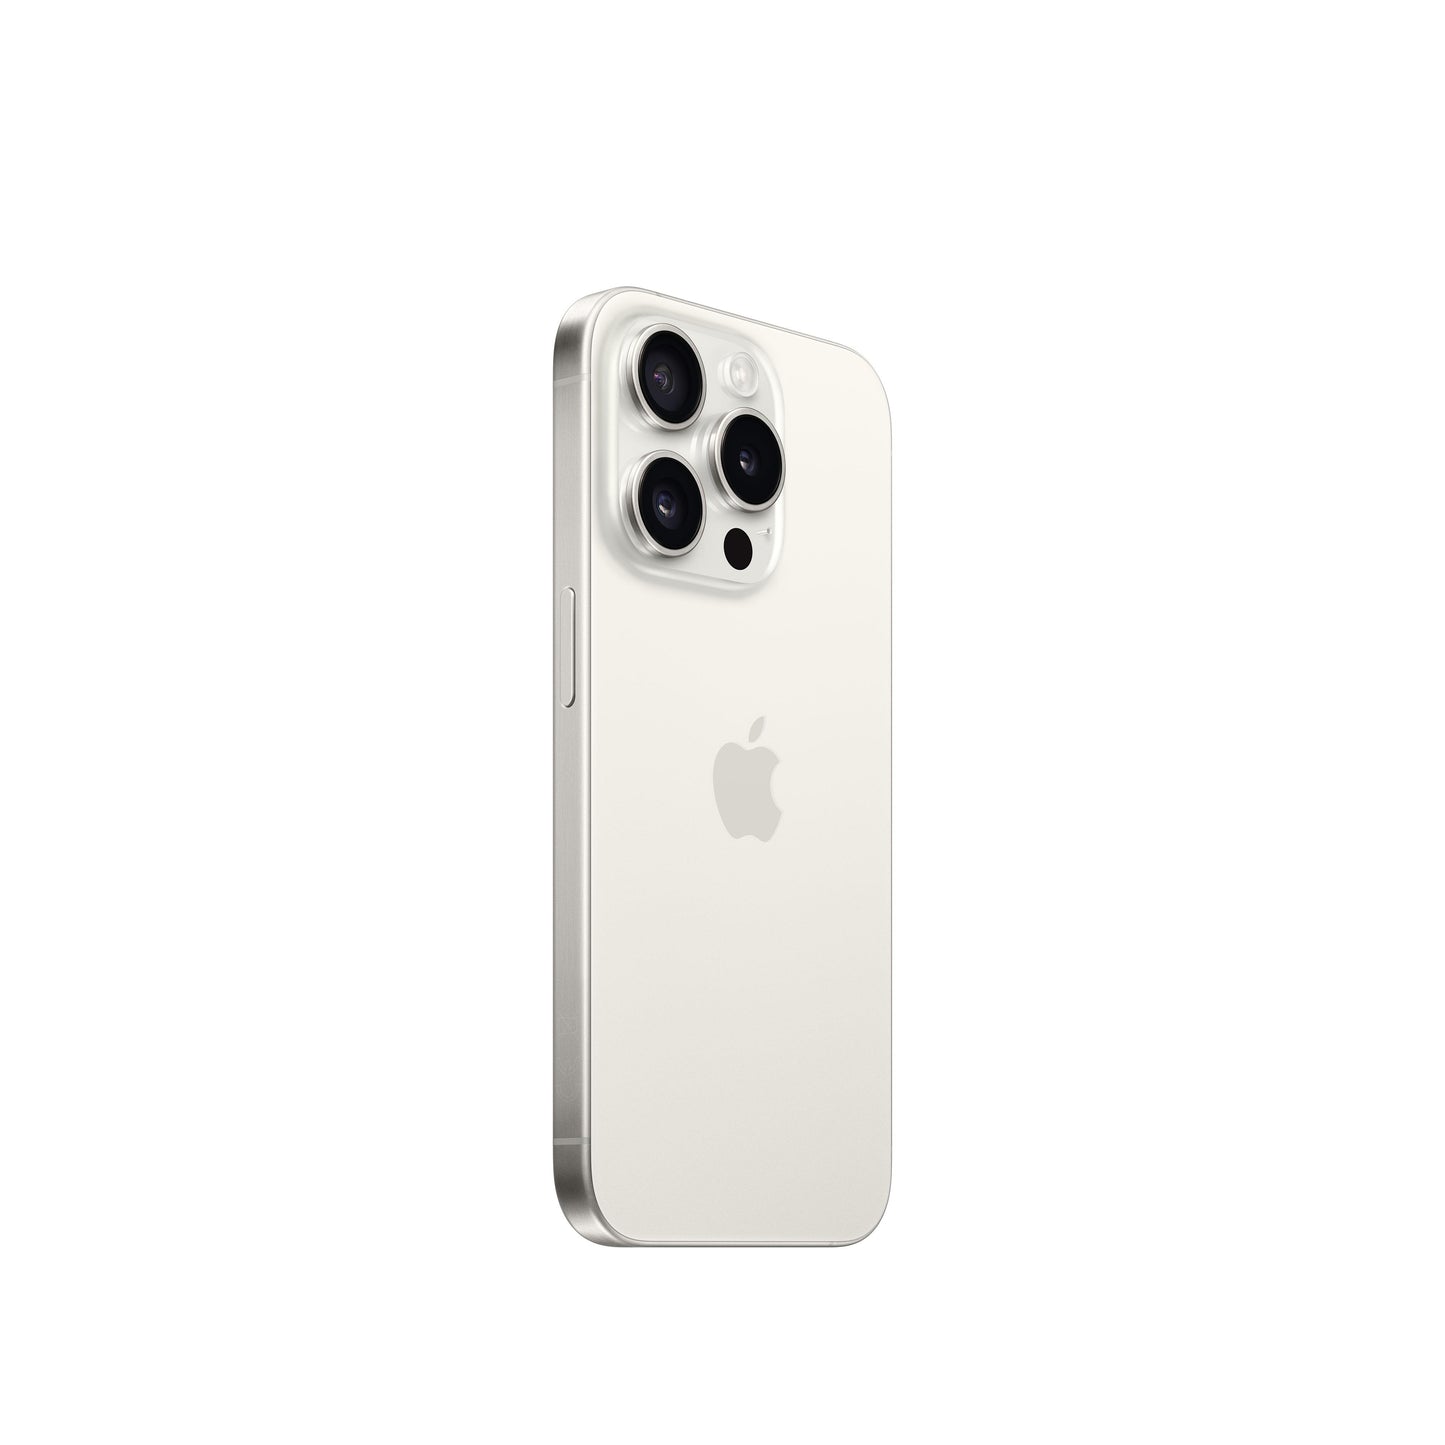 iPhone 15 Pro 256 GB Titanio blanco